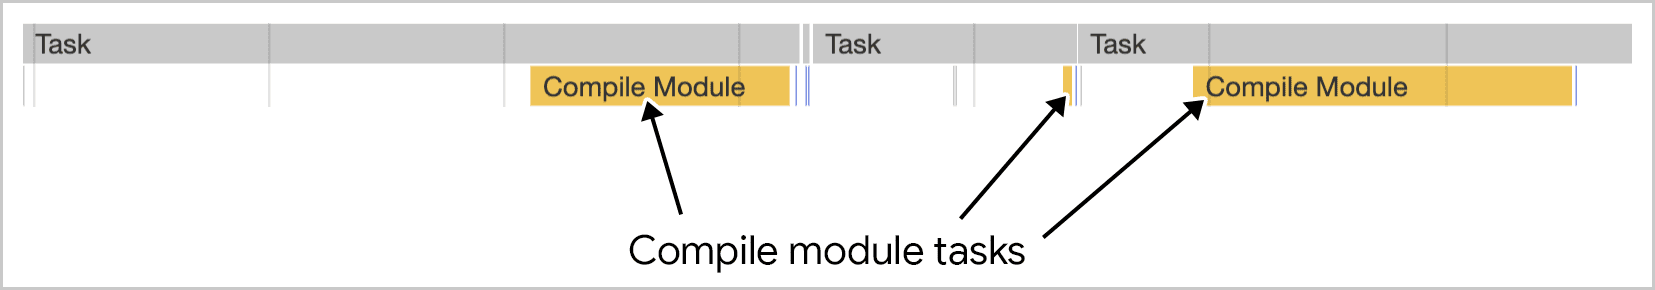 模块编译可在多个任务中运行，如 Chrome 开发者工具所示。